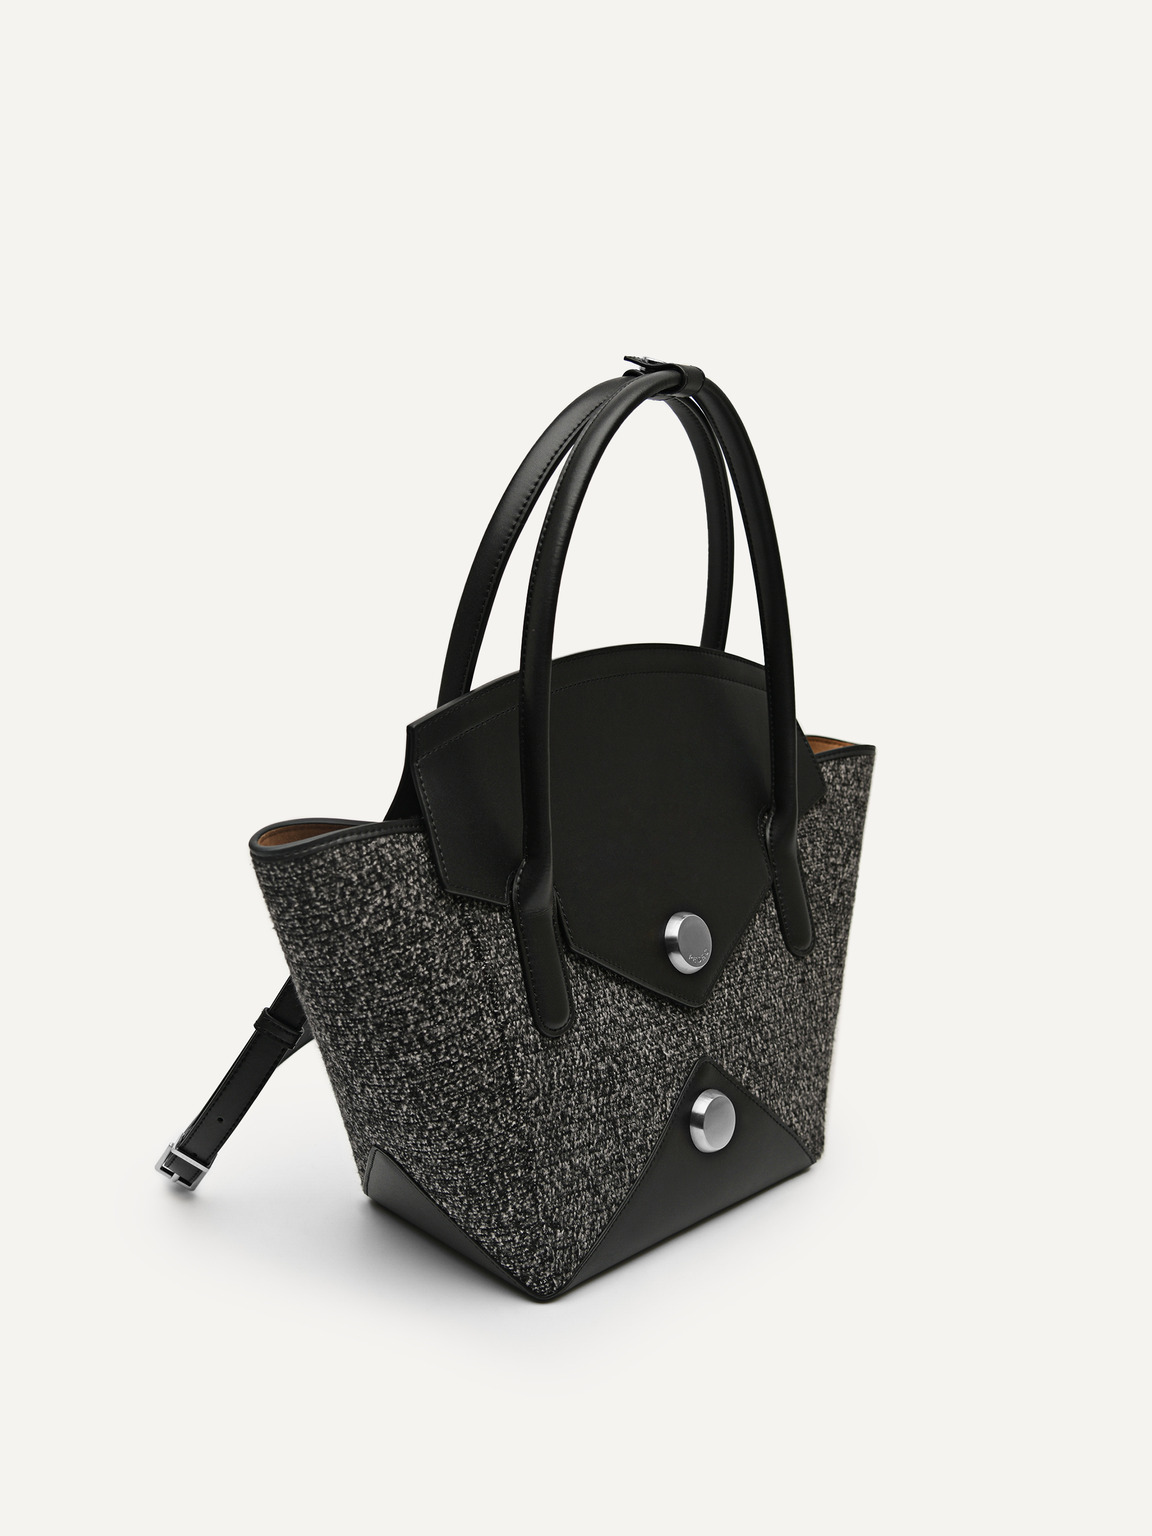 Orb Leather Handbag, Black